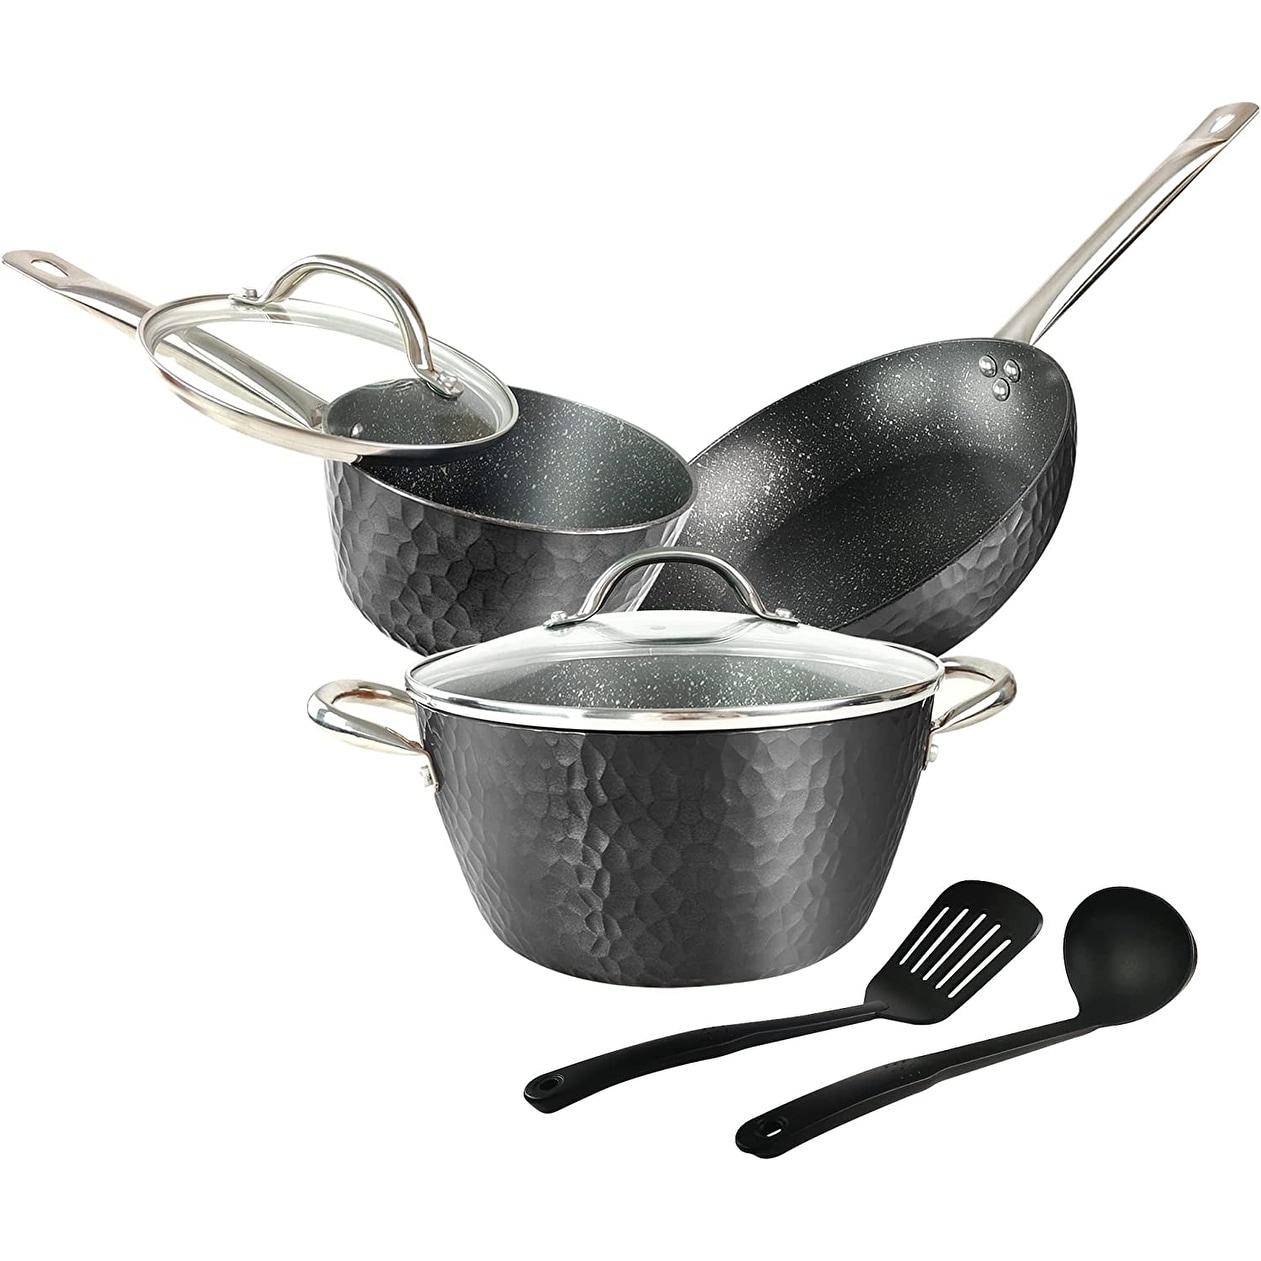 Basics Non-Stick Cookware Set, Pots, Pans - 7-Piece Set (7 Pieces Copper)